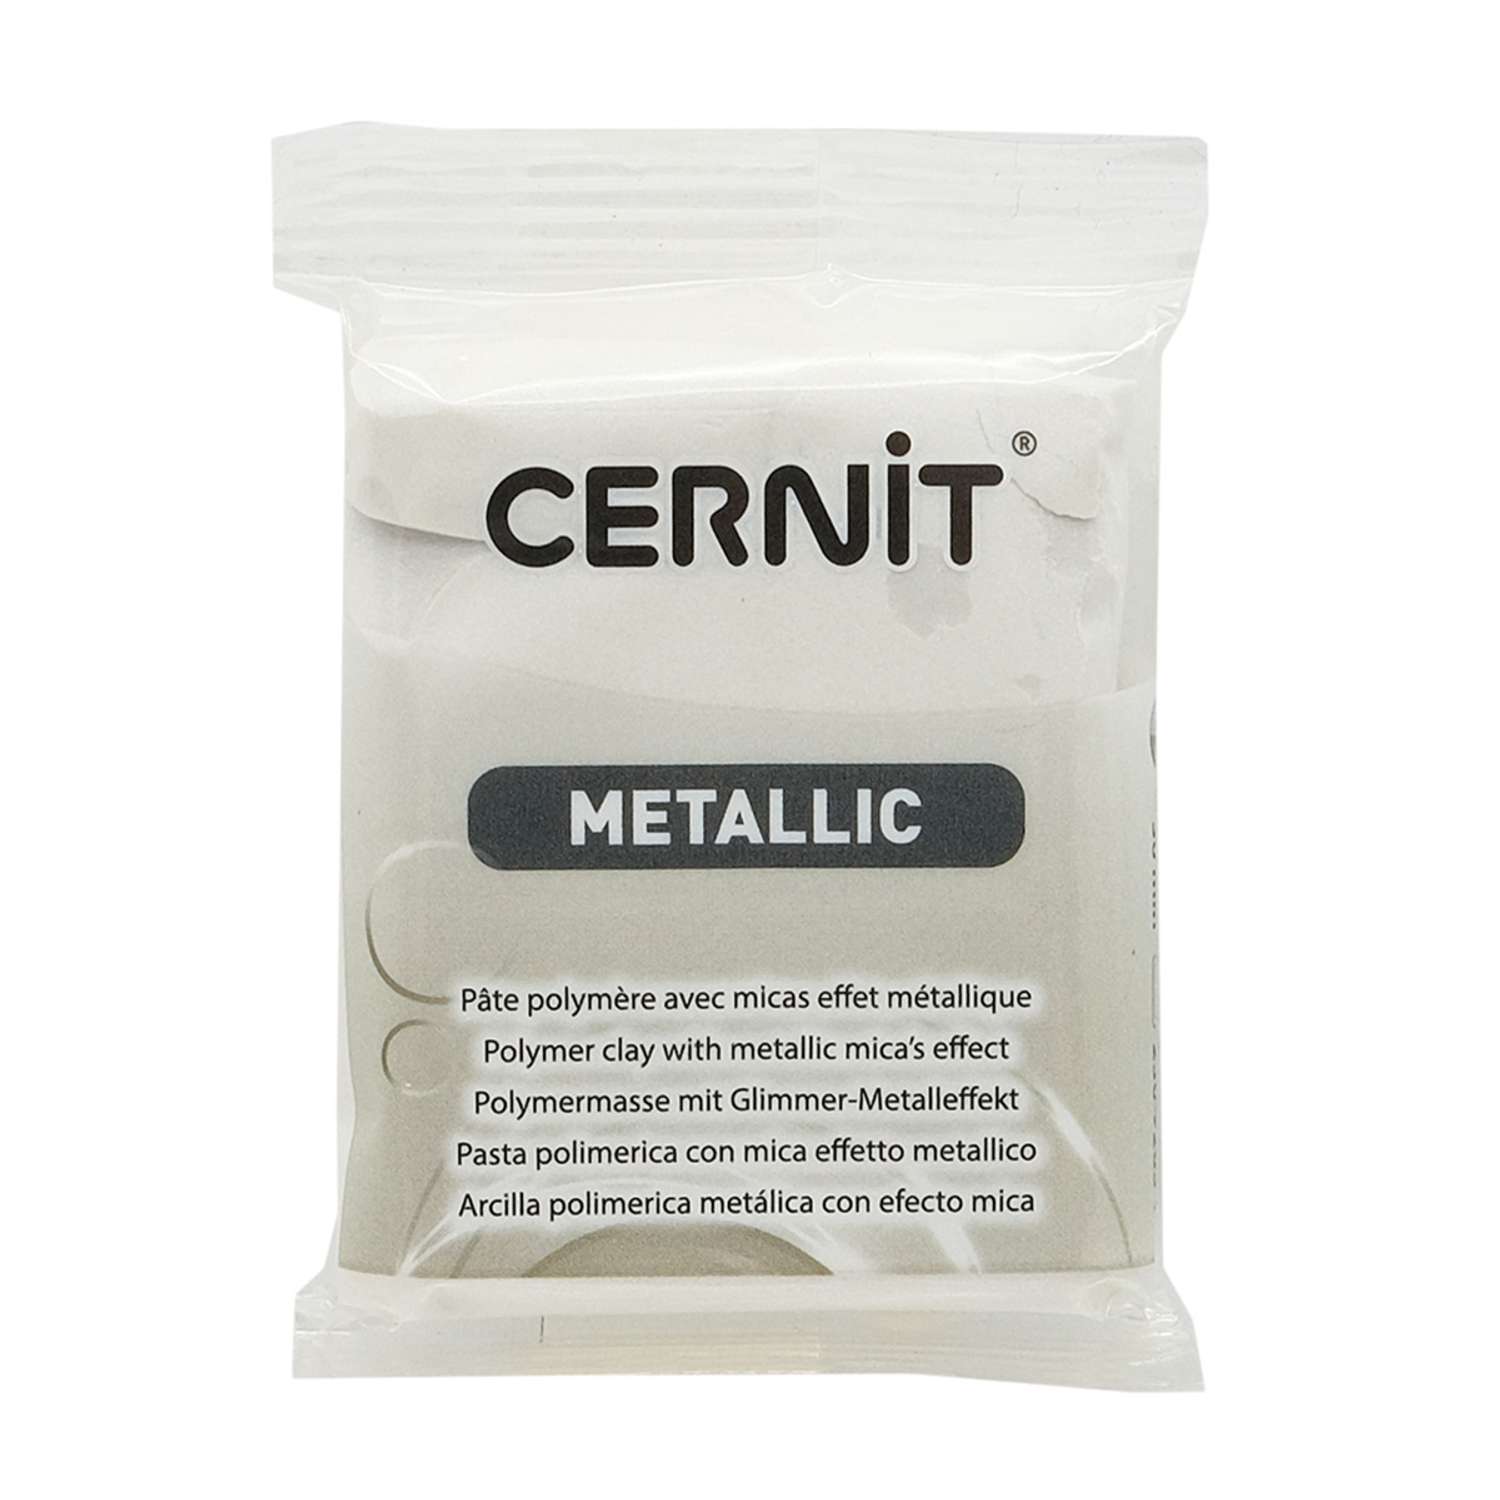 Полимерная глина Cernit пластика запекаемая Цернит metallic 56 гр CE0870067 - фото 7